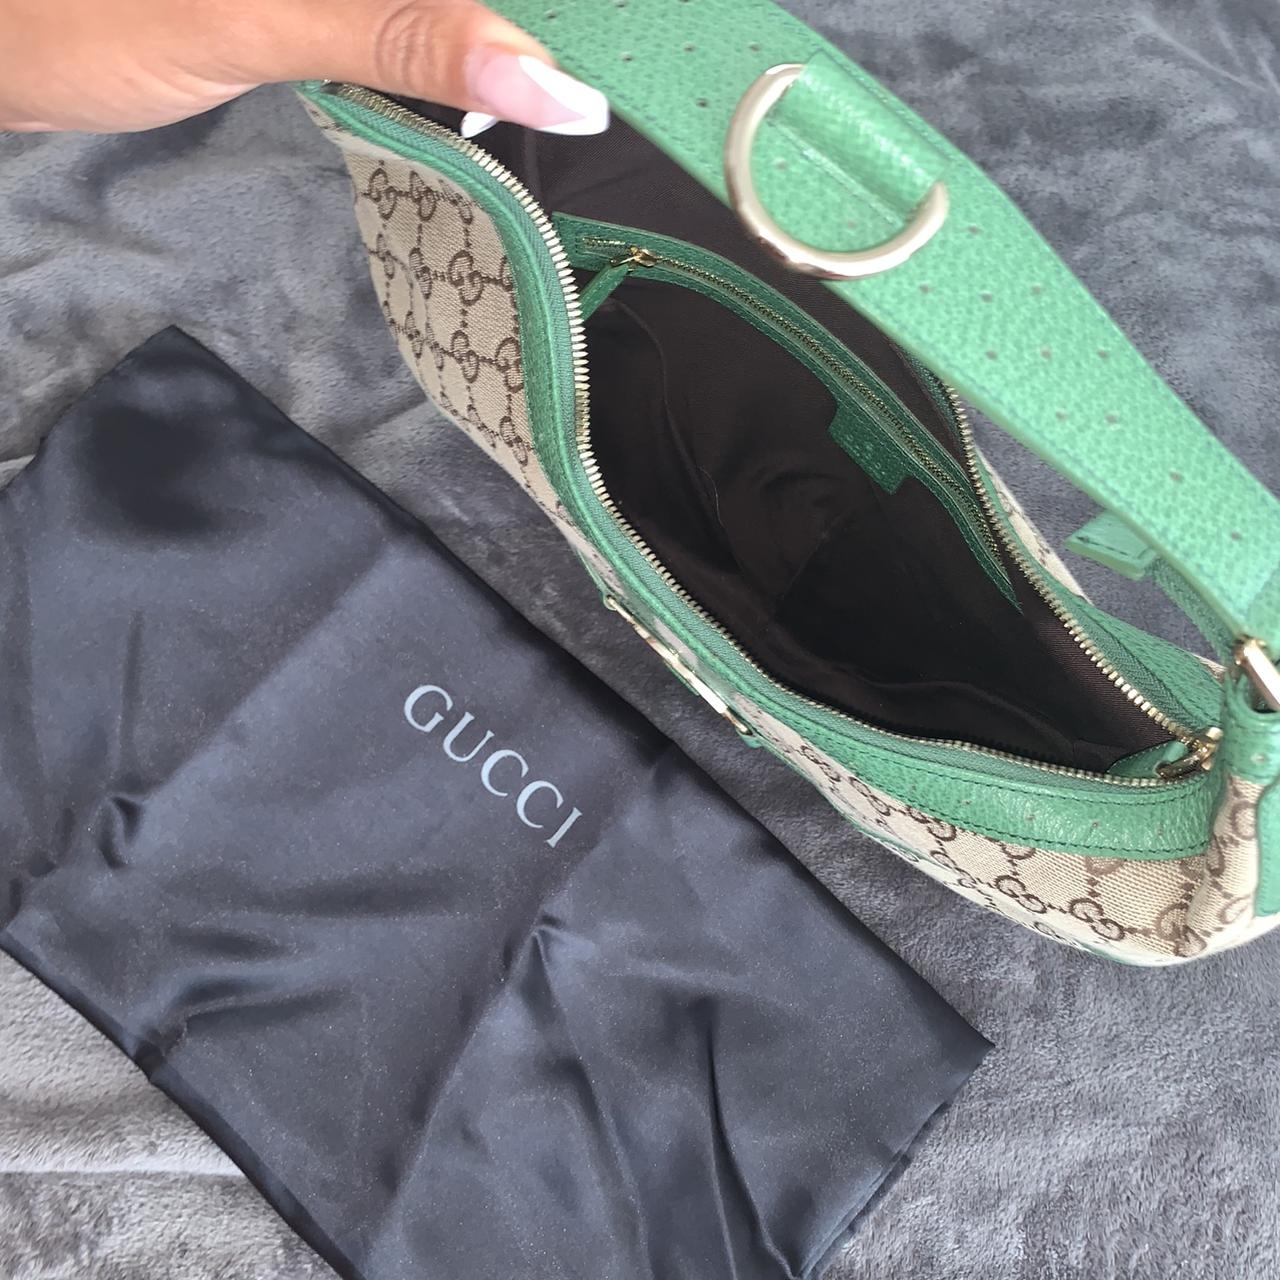 (SOLD) Vintage Gucci bag 2003, in a pristine... - Depop